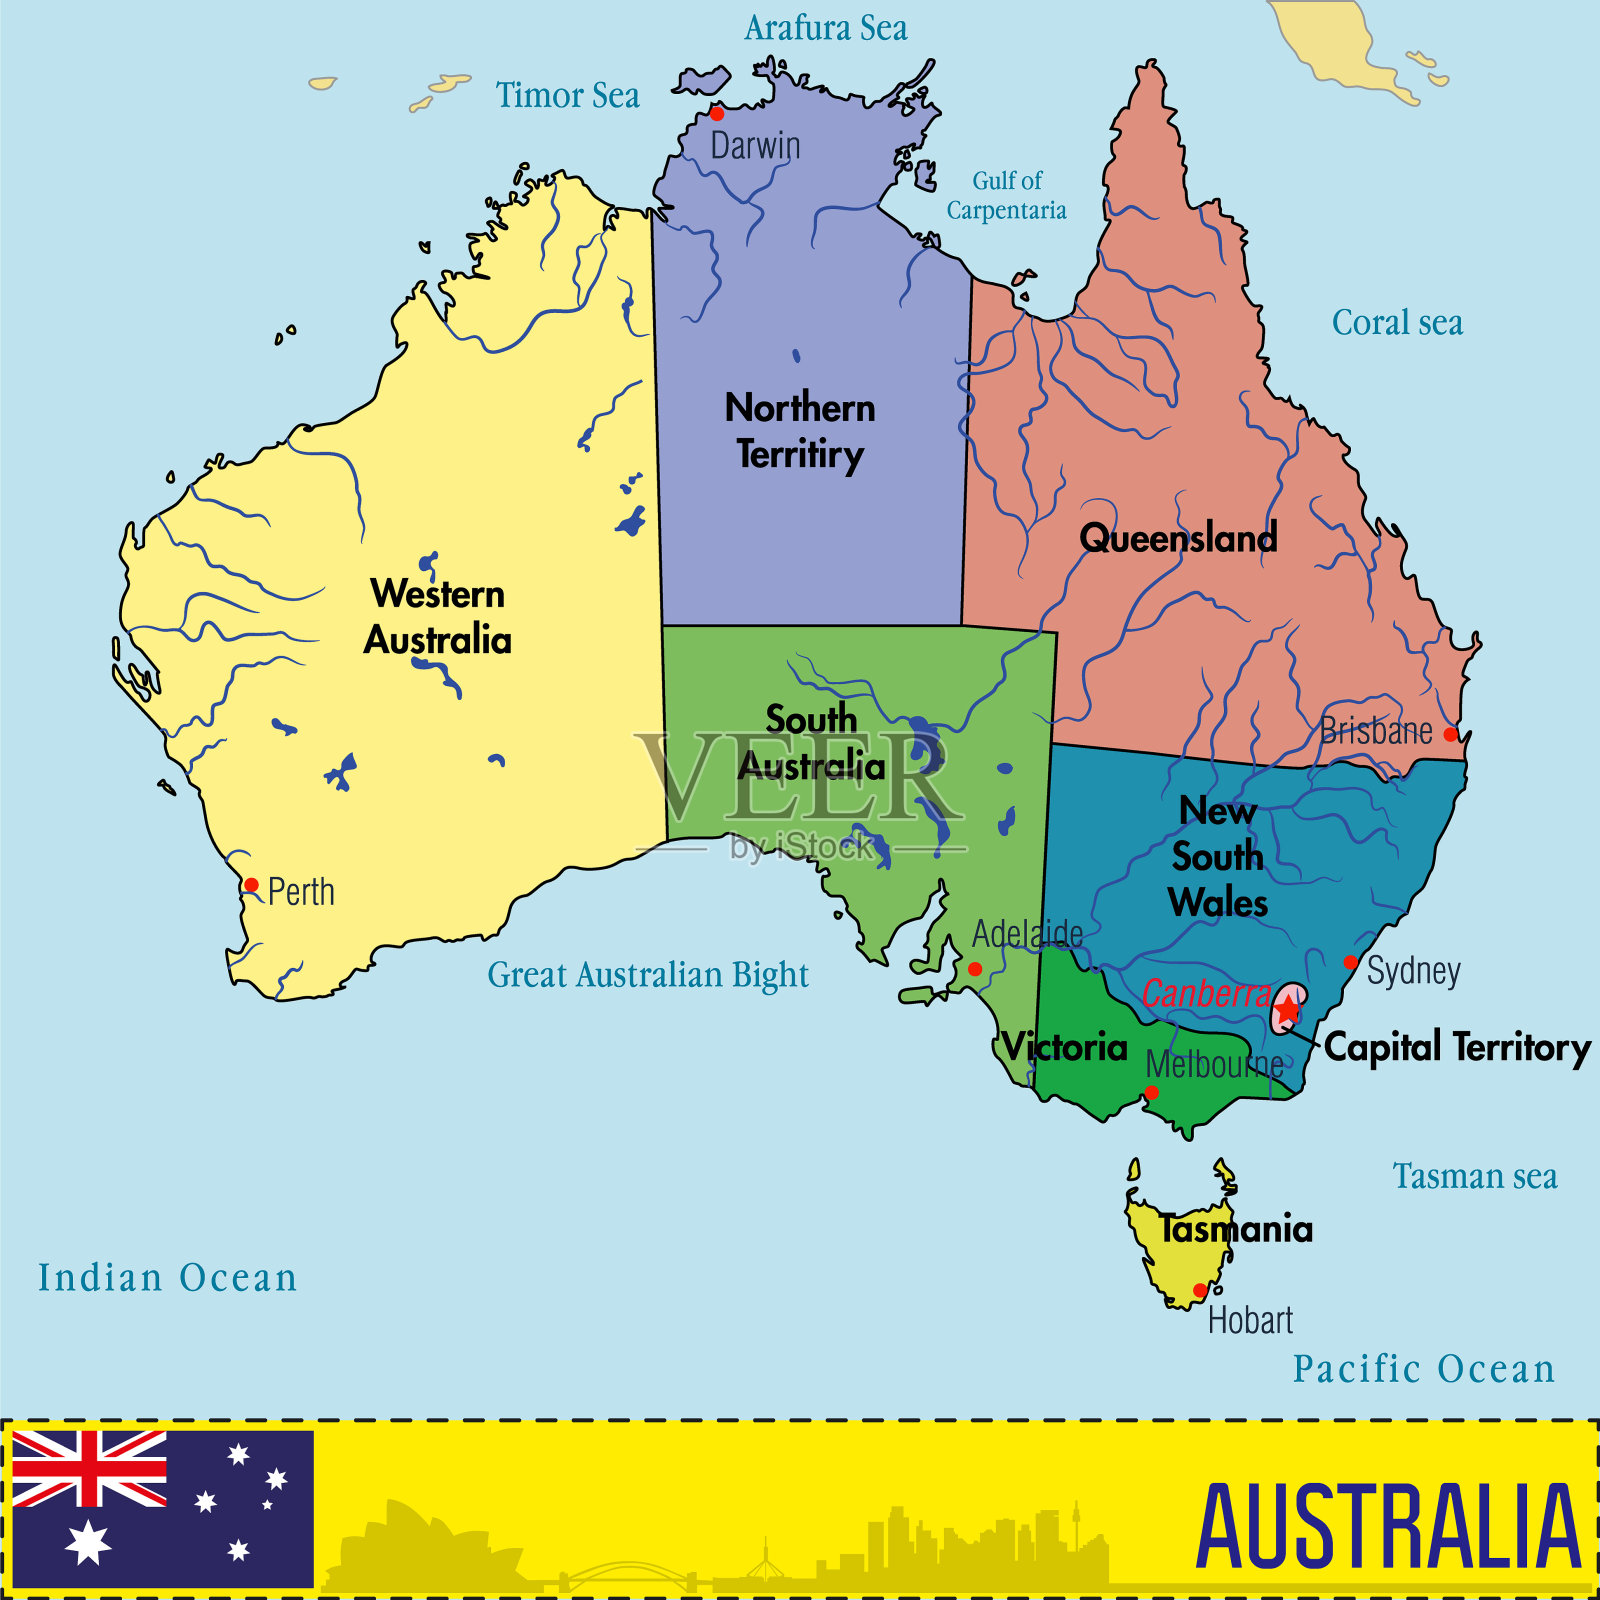 澳洲地圖圖片 – 澳洲地圖全圖中文 – Dinerpar